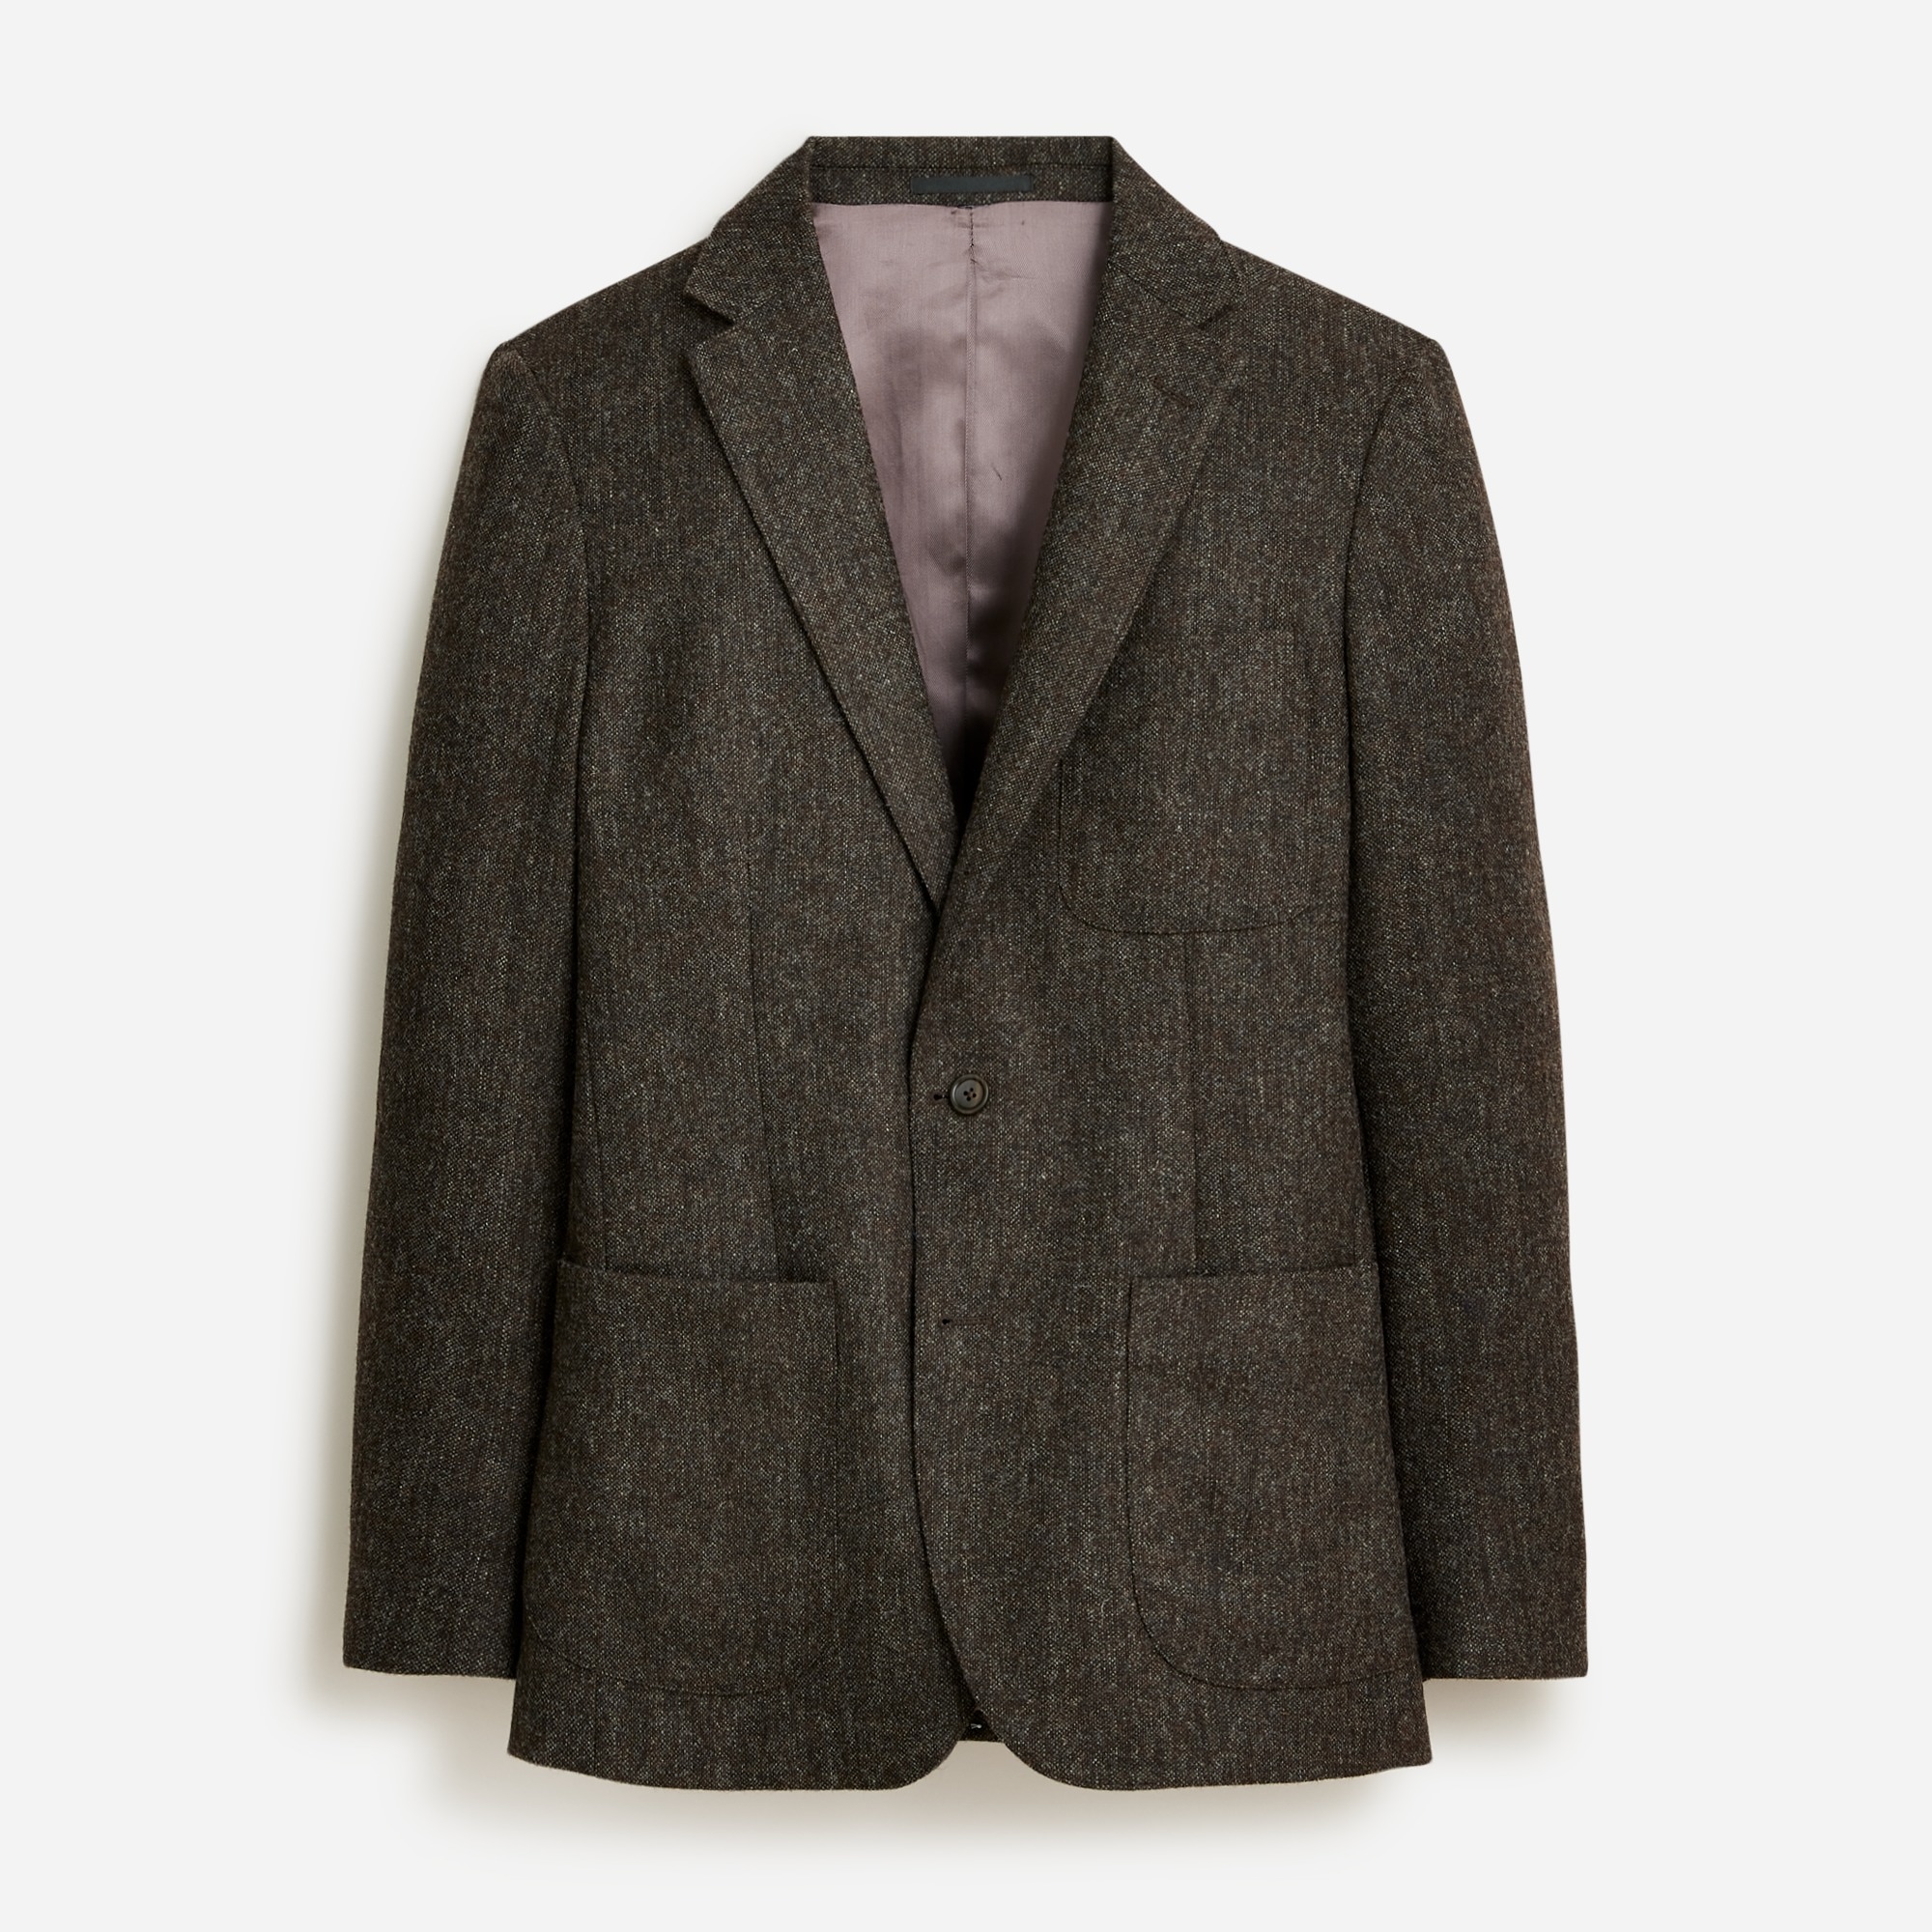  Ludlow Slim-fit suit jacket in English wool tweed